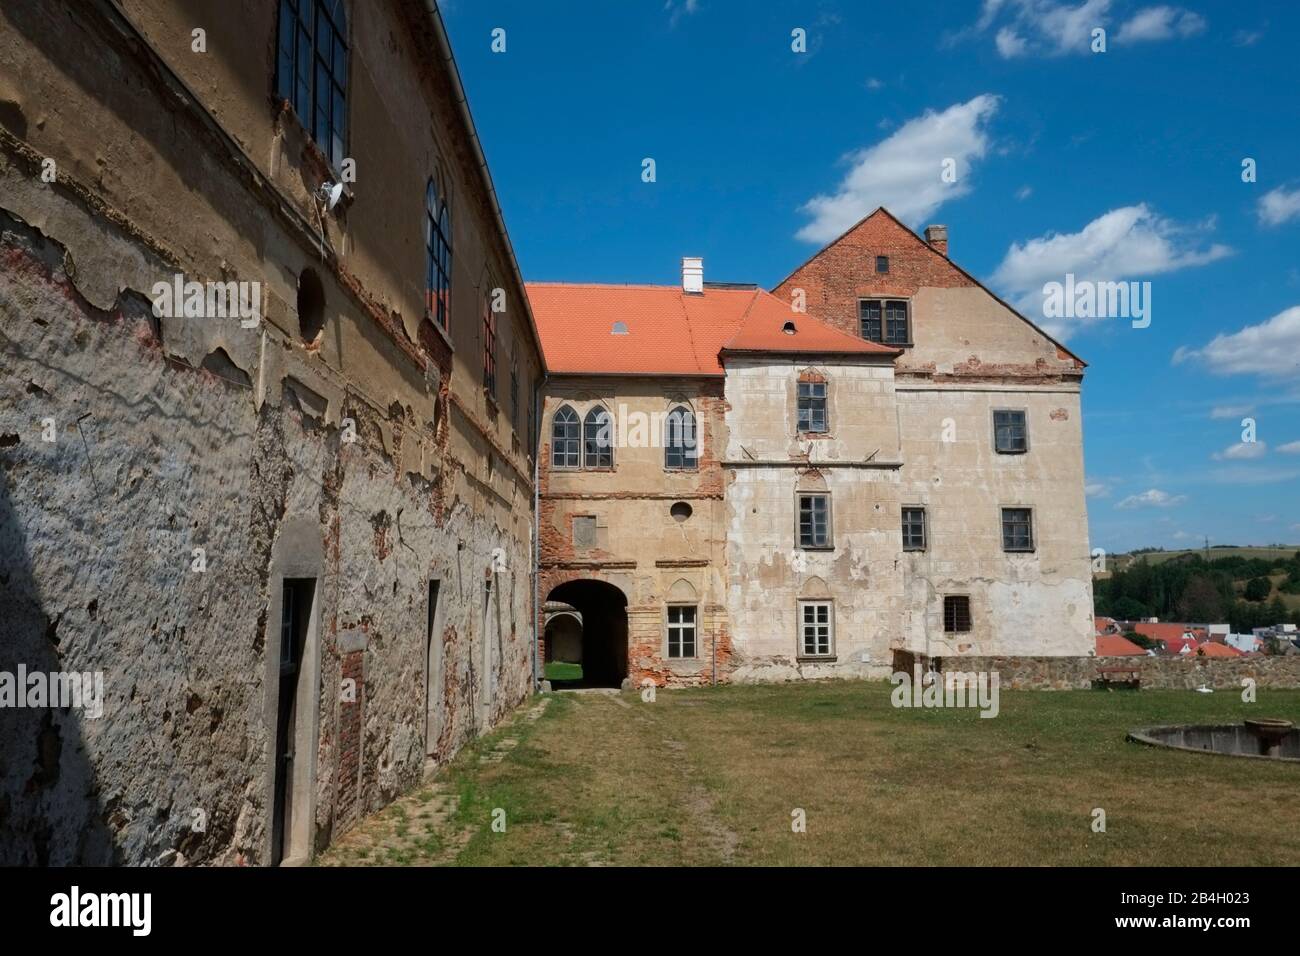 Le château de Brtnice, confisqué à ses propriétaires en 1945 par les décrets Benes, ce château gothique est en état de délabrement sans réparation, République tchèque Banque D'Images